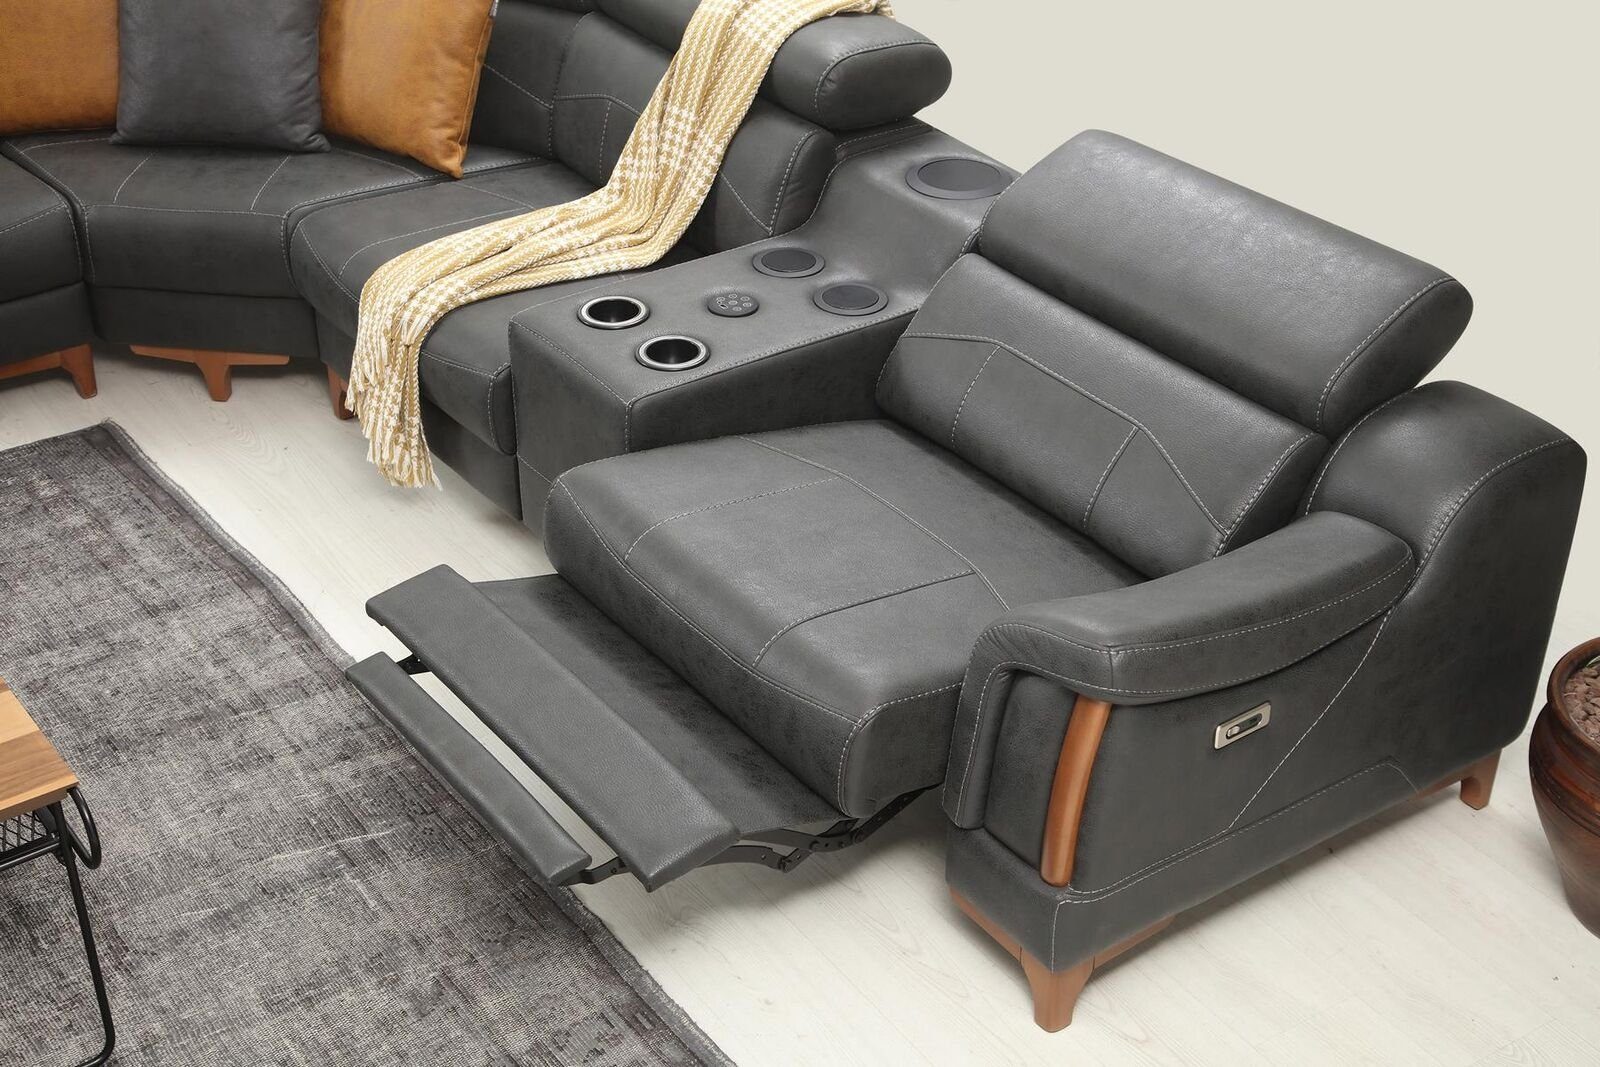 JVmoebel L-Form Made Neu Luxus in Ecksofa Teile, Modern, Designer Ecksofa Europa 6 Möbel Sofa Wohnzimmer